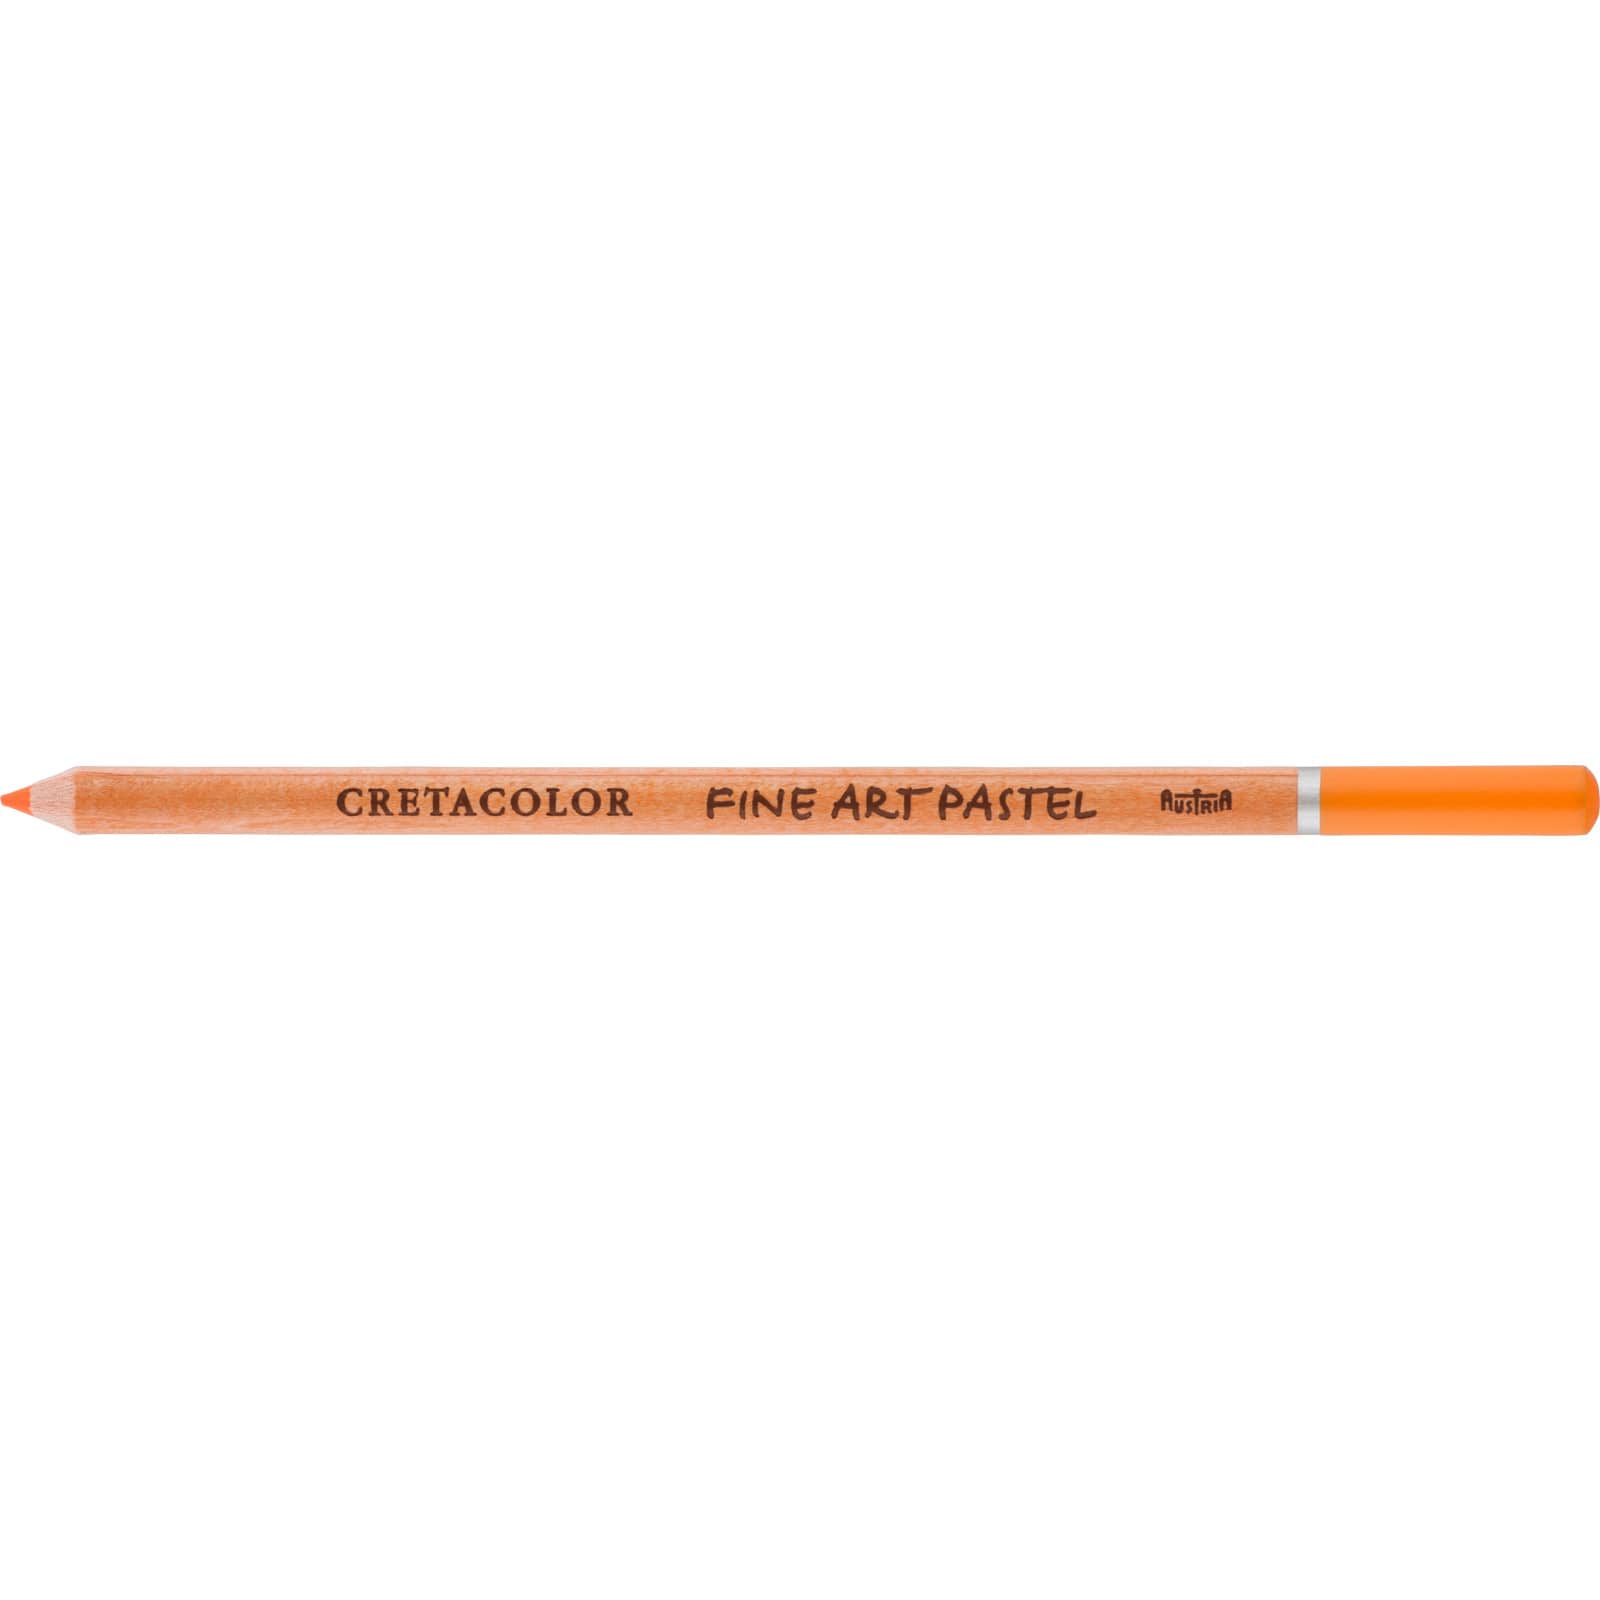 9 Pack: Cretacolor Fine Art Pastel Pencil